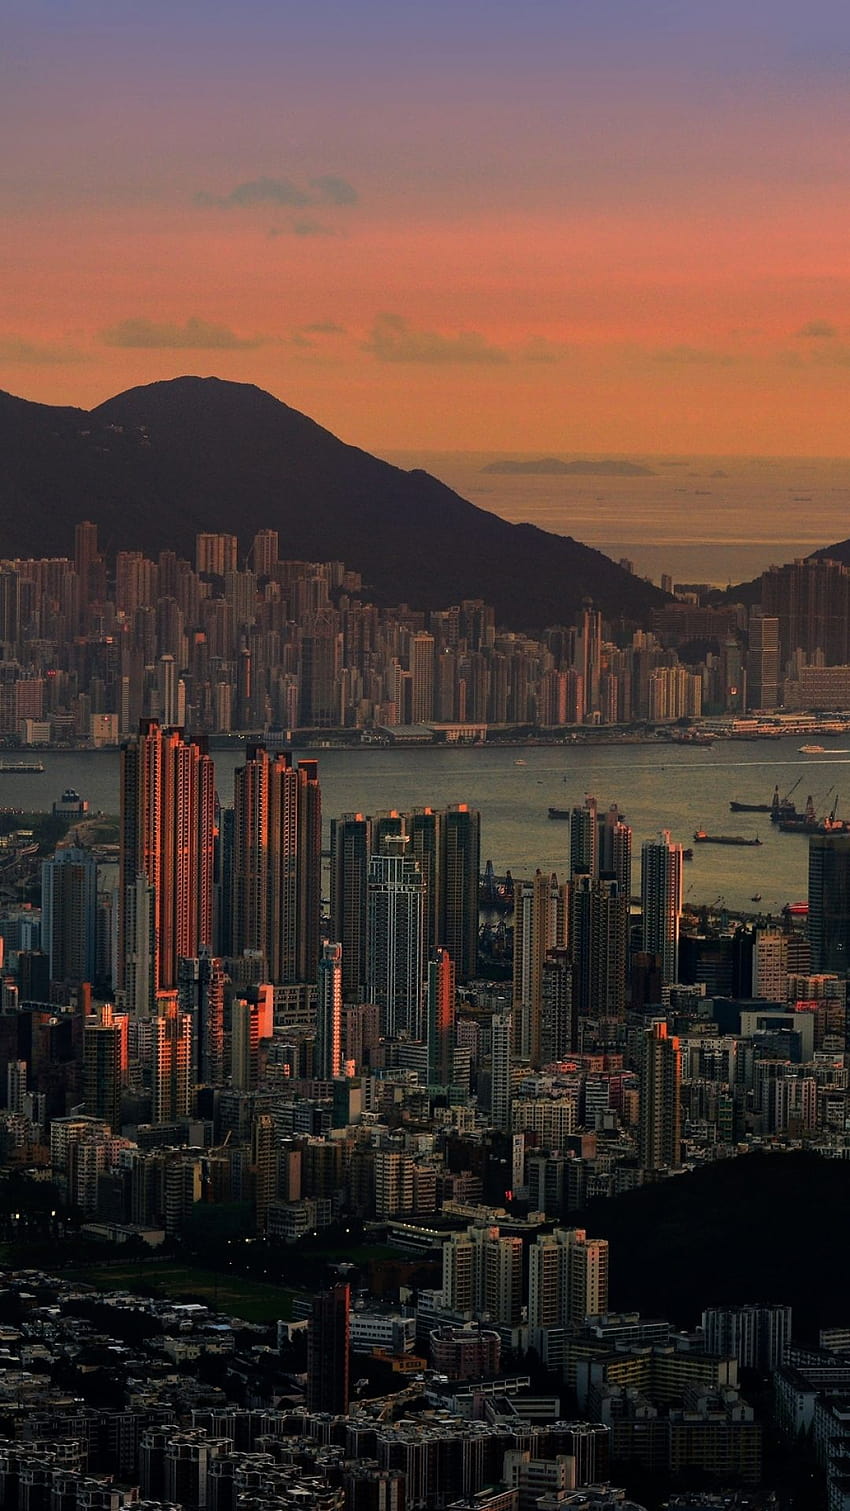 Hình nền Hong Kong iPhone HD là độ phân giải cao mang lại cho bạn trải nghiệm hình ảnh rõ nét, sống động và chân thực về sức sống của thành phố Hong Kong. Hãy đến với bộ sưu tập hình nền iPhone Hong Kong HD của chúng tôi để tận hưởng chất lượng hình ảnh tuyệt vời trên thiết bị của bạn.